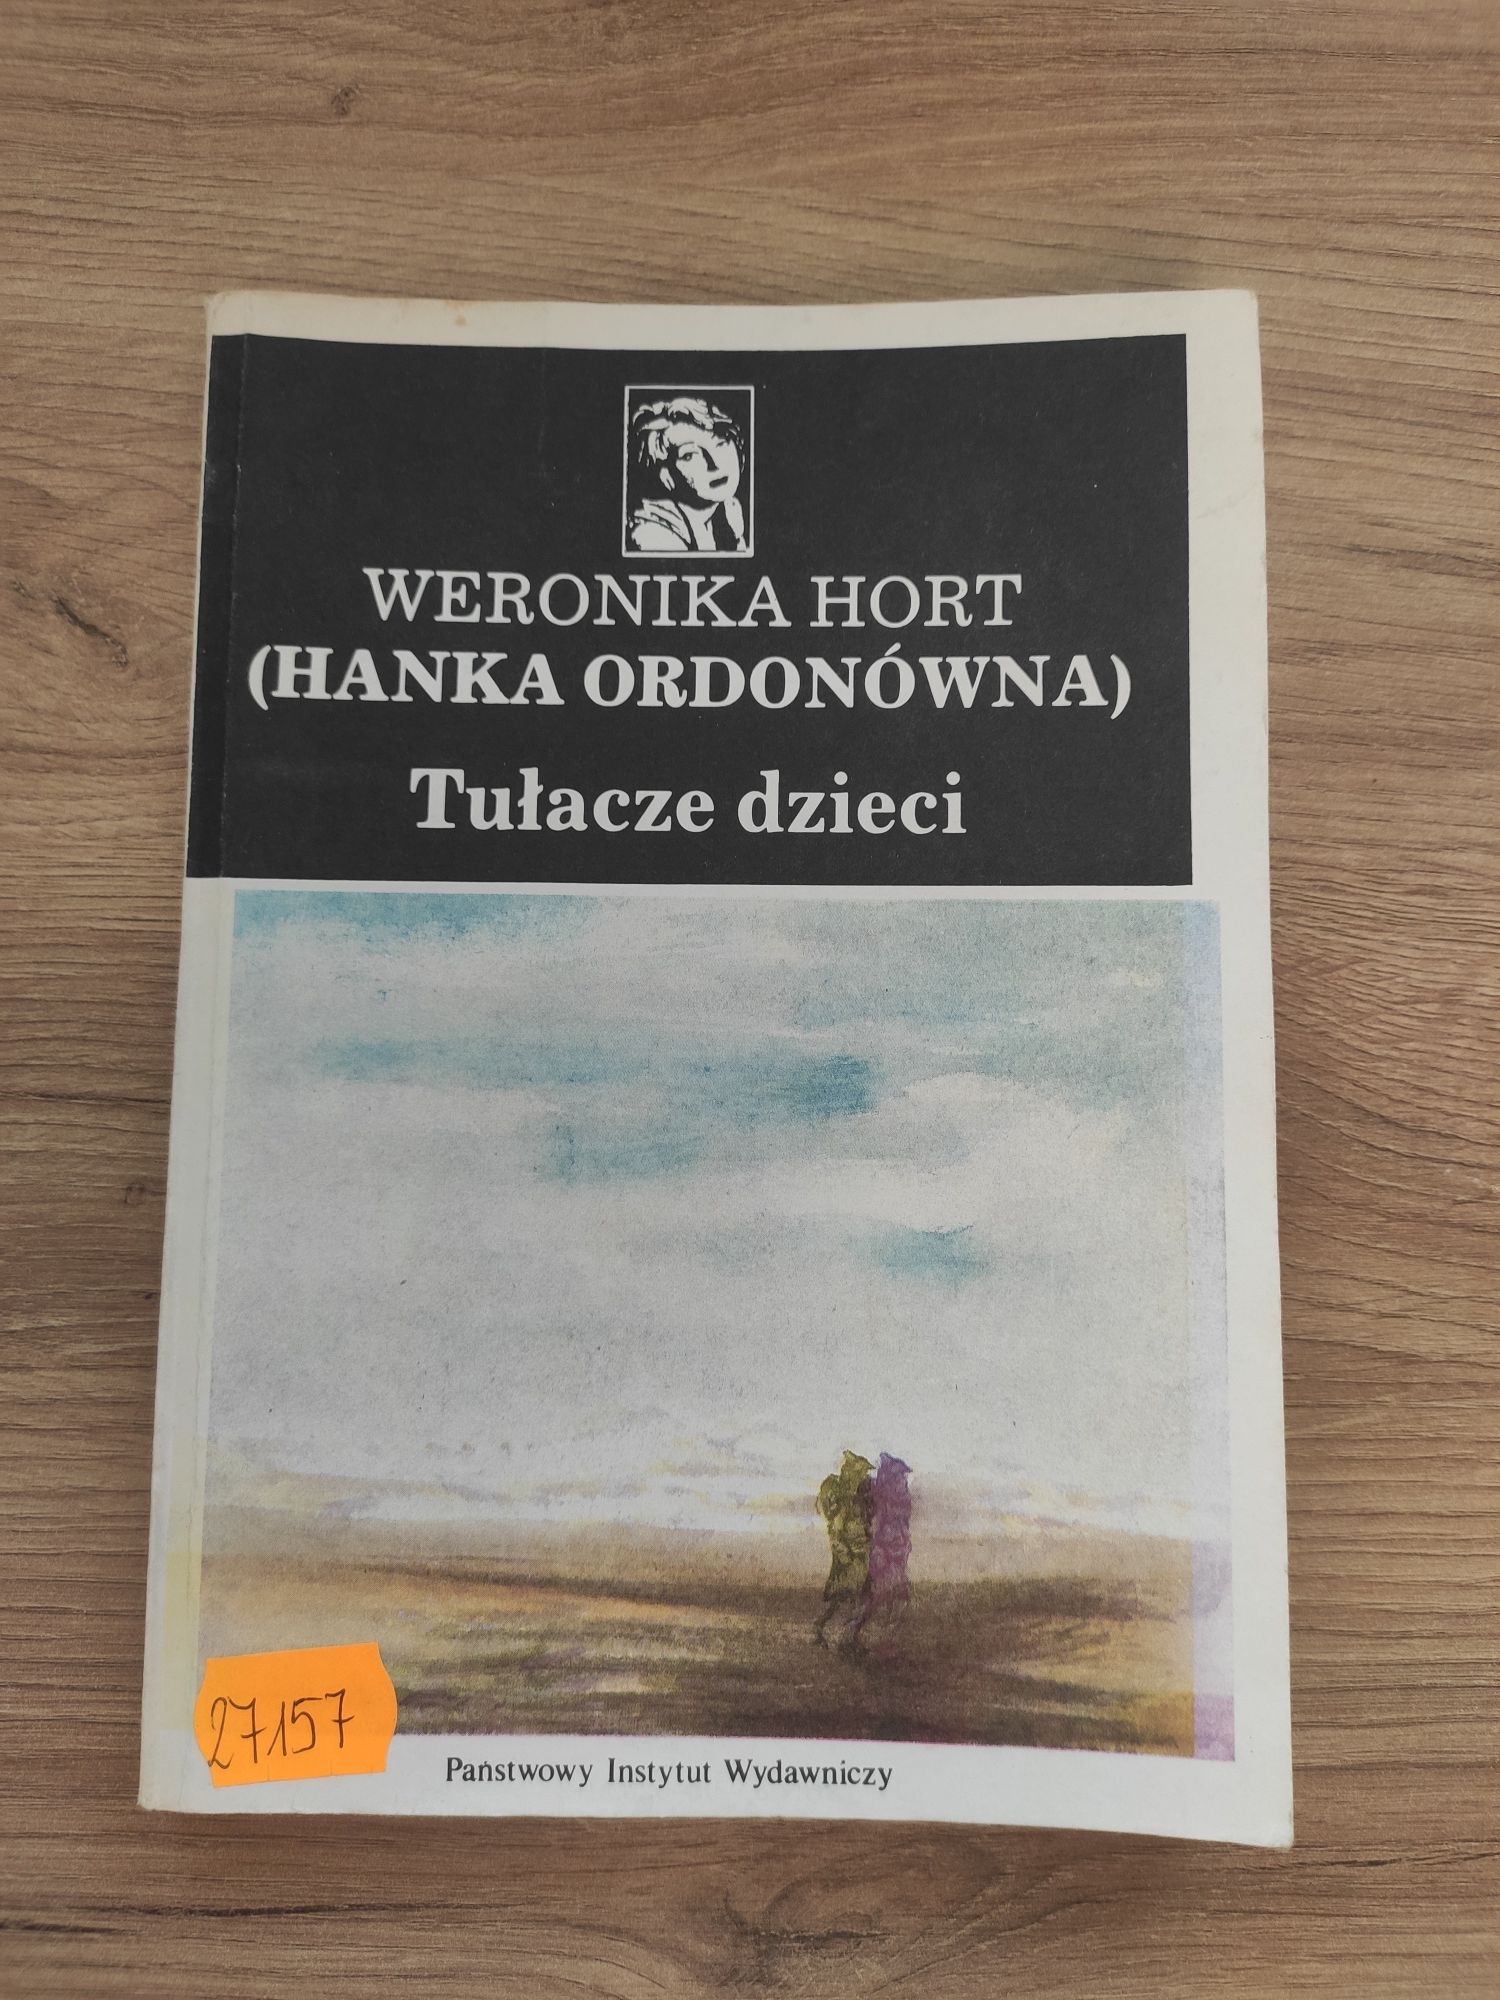 stara książka Weronika hort tułacze dzieci